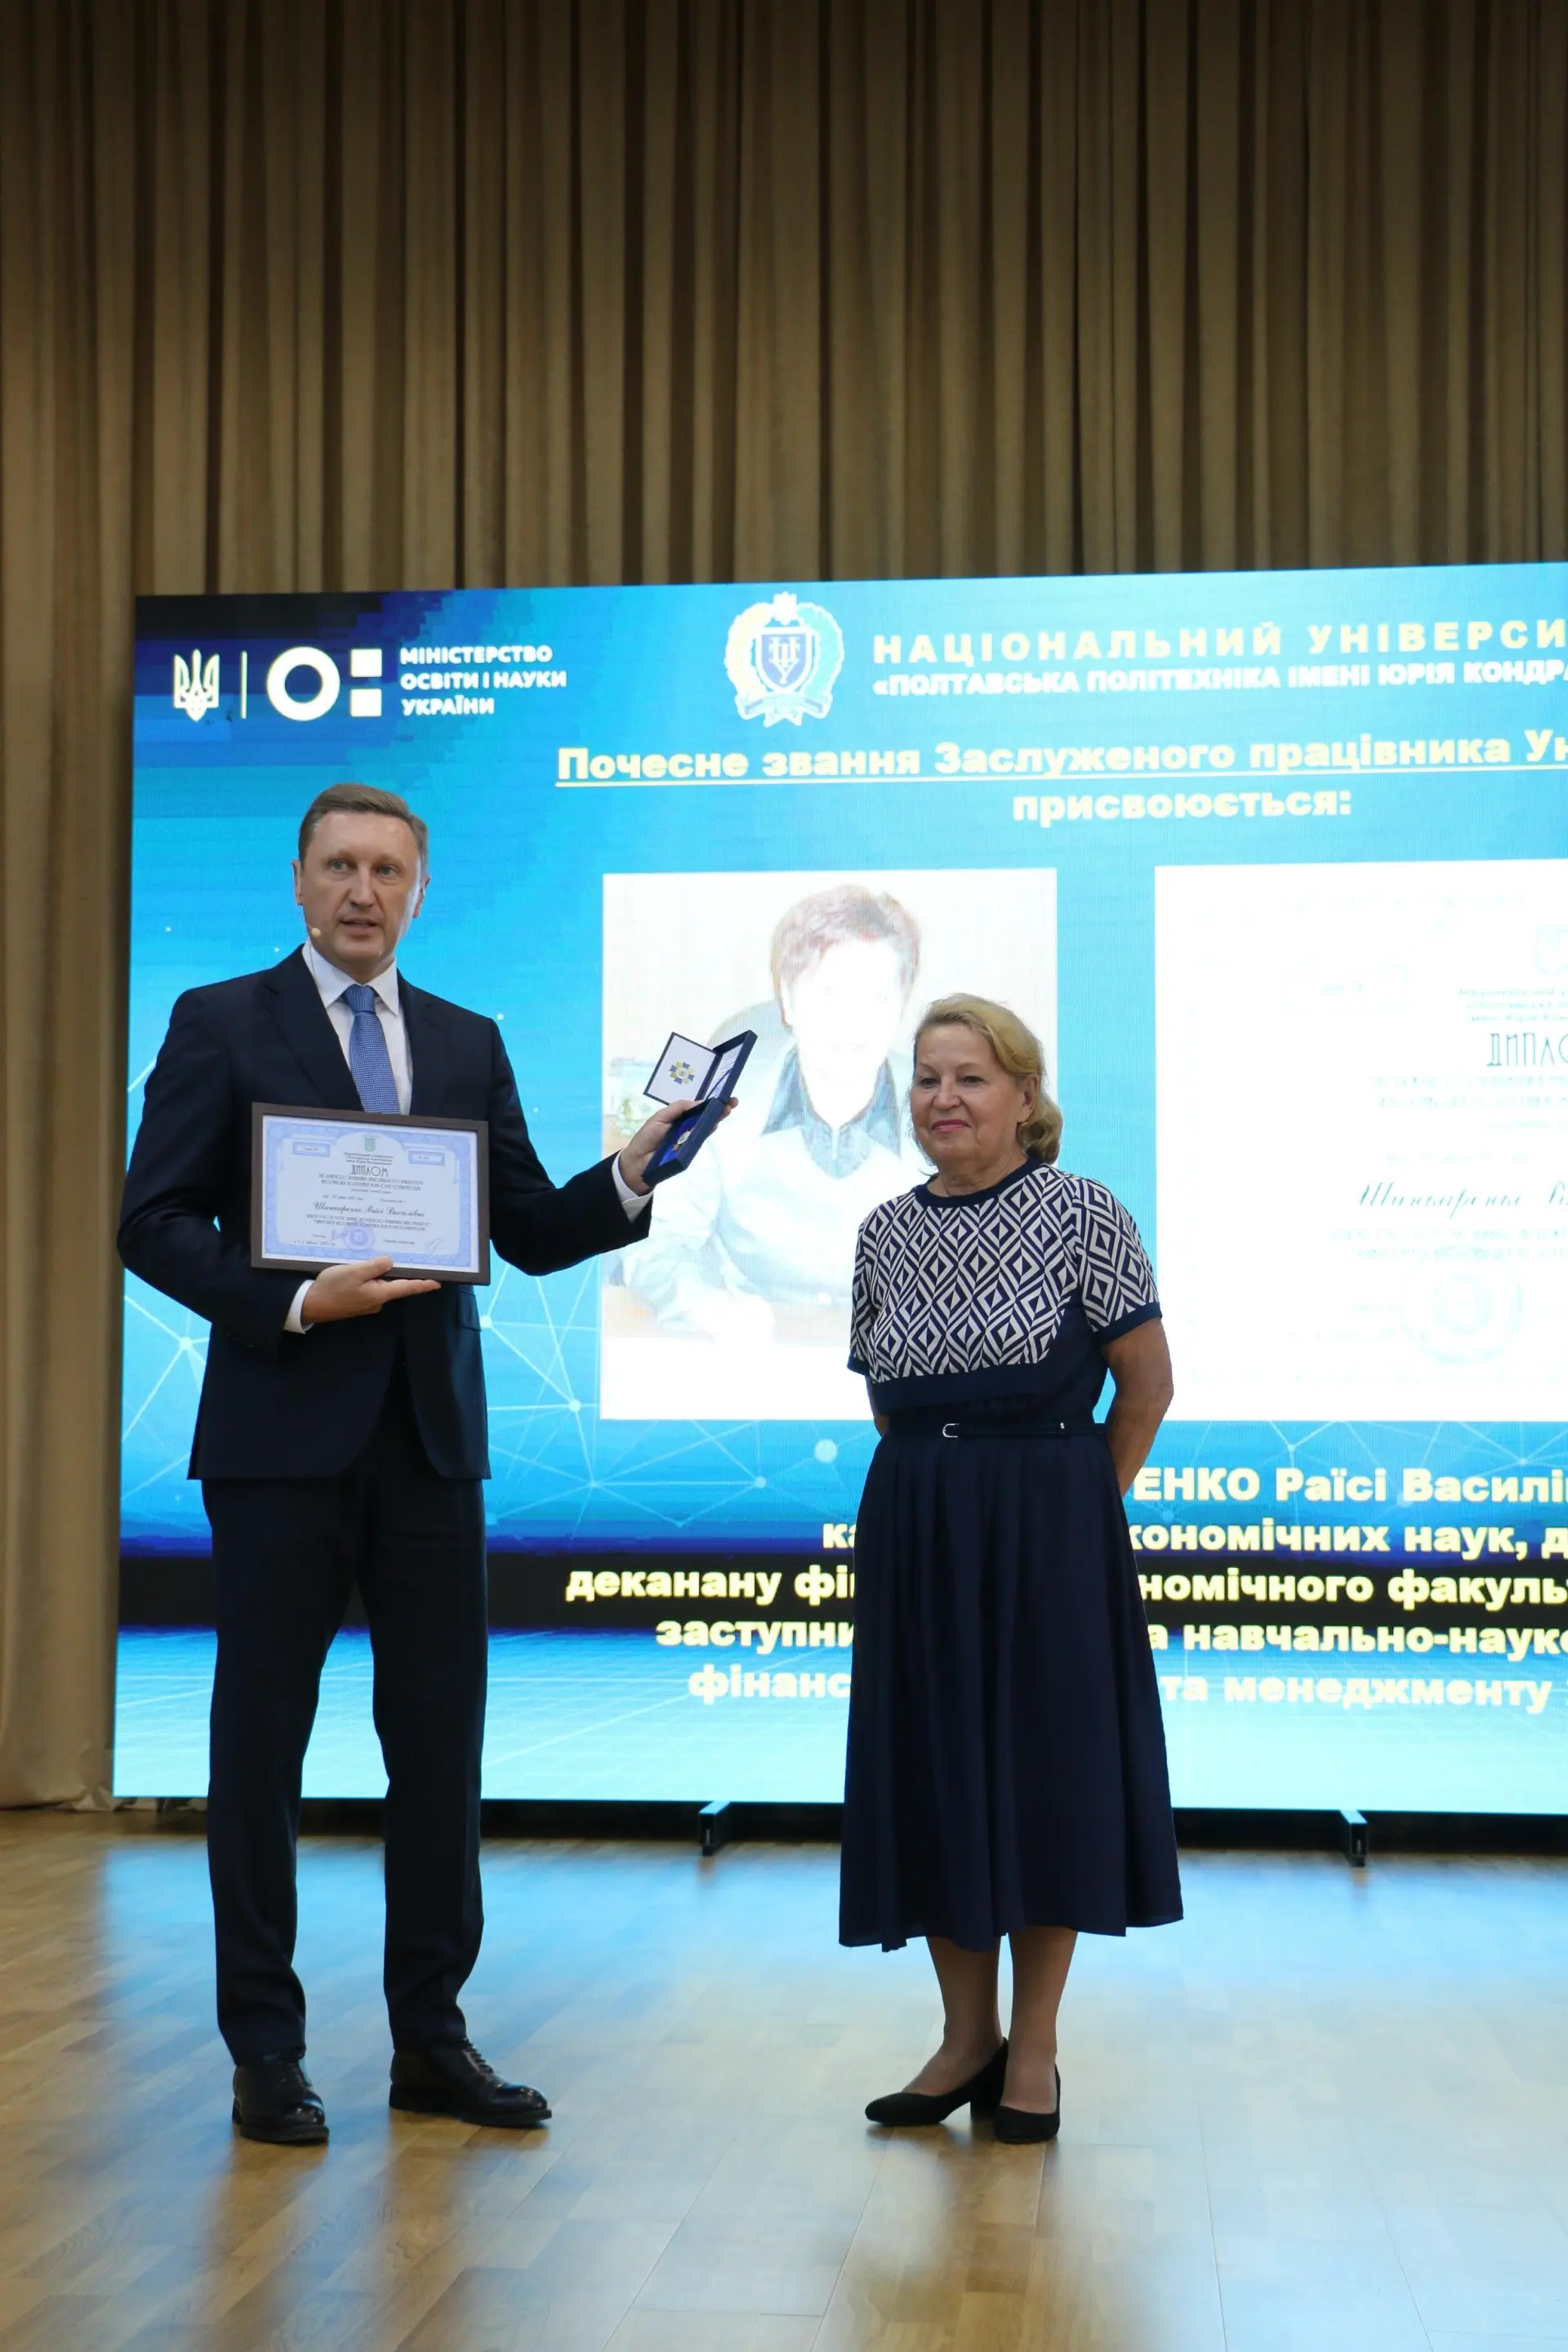 Двох науковиць нагороджено почесним званням «Заслужений працівник Університету»